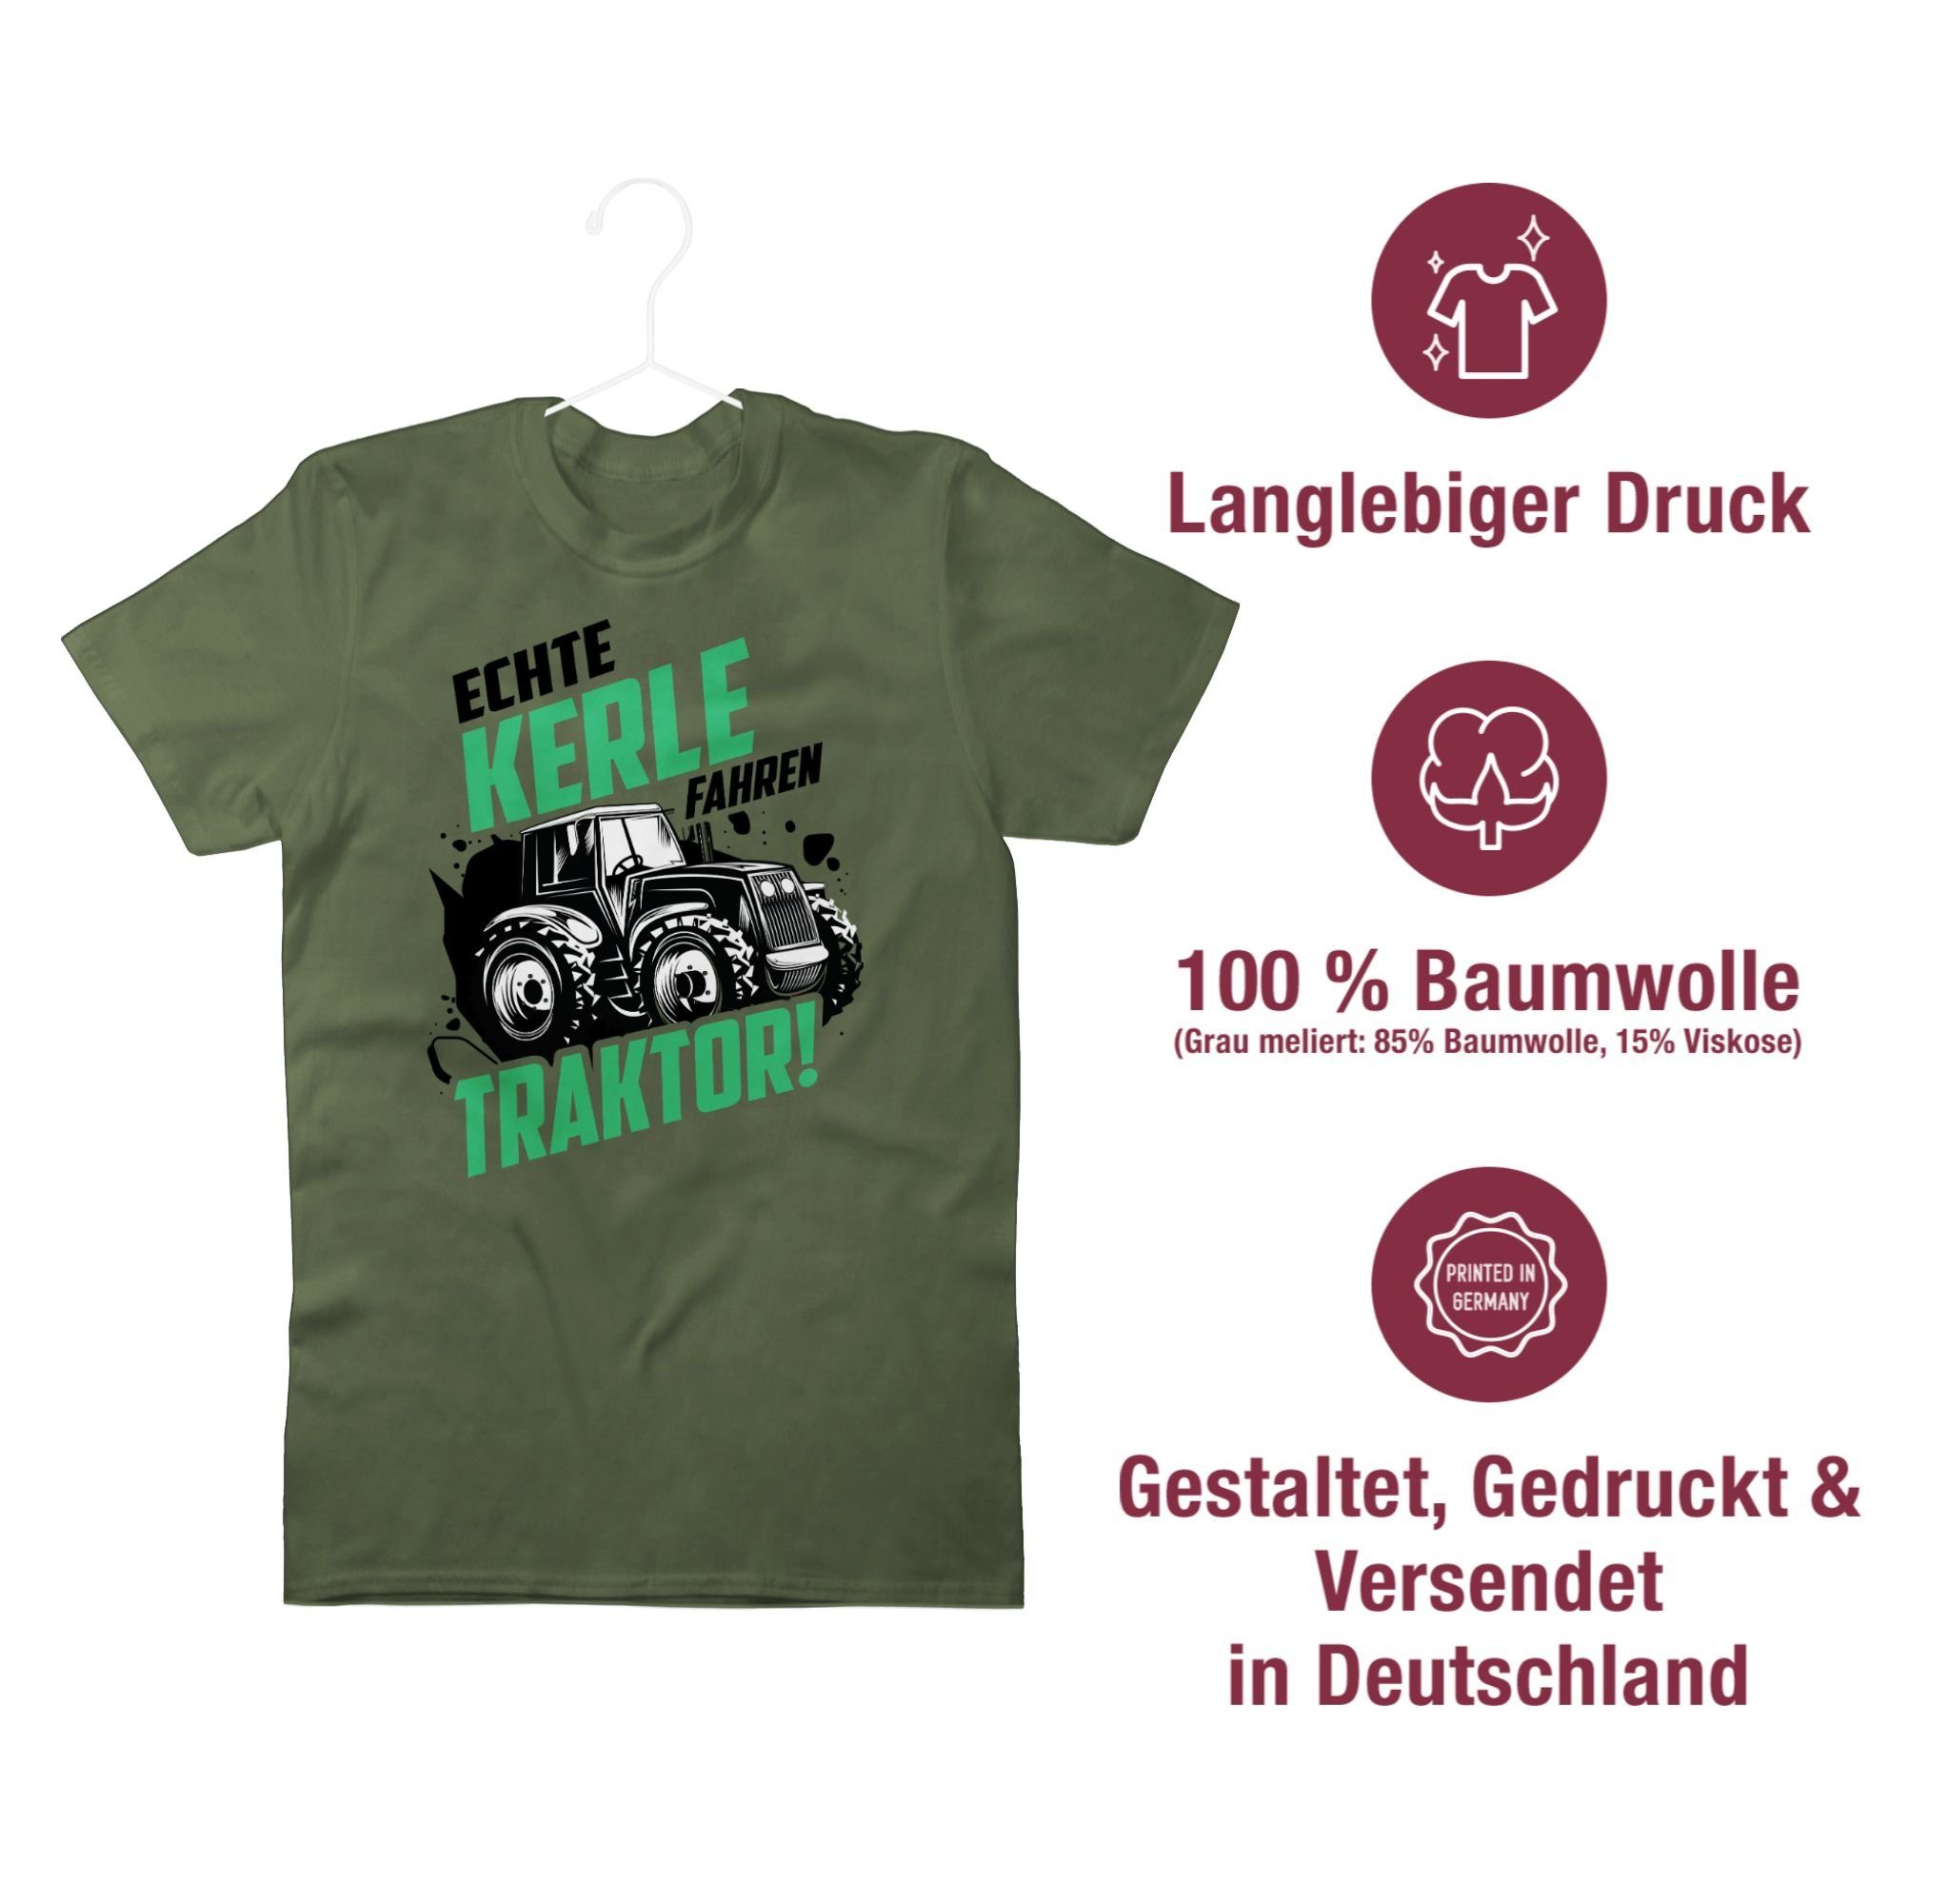 Shirtracer Trecker Traktor Grün Echte Bauer Kerle Army Geschenk fahren T-Shirt Fahrzeuge Landwirt 2